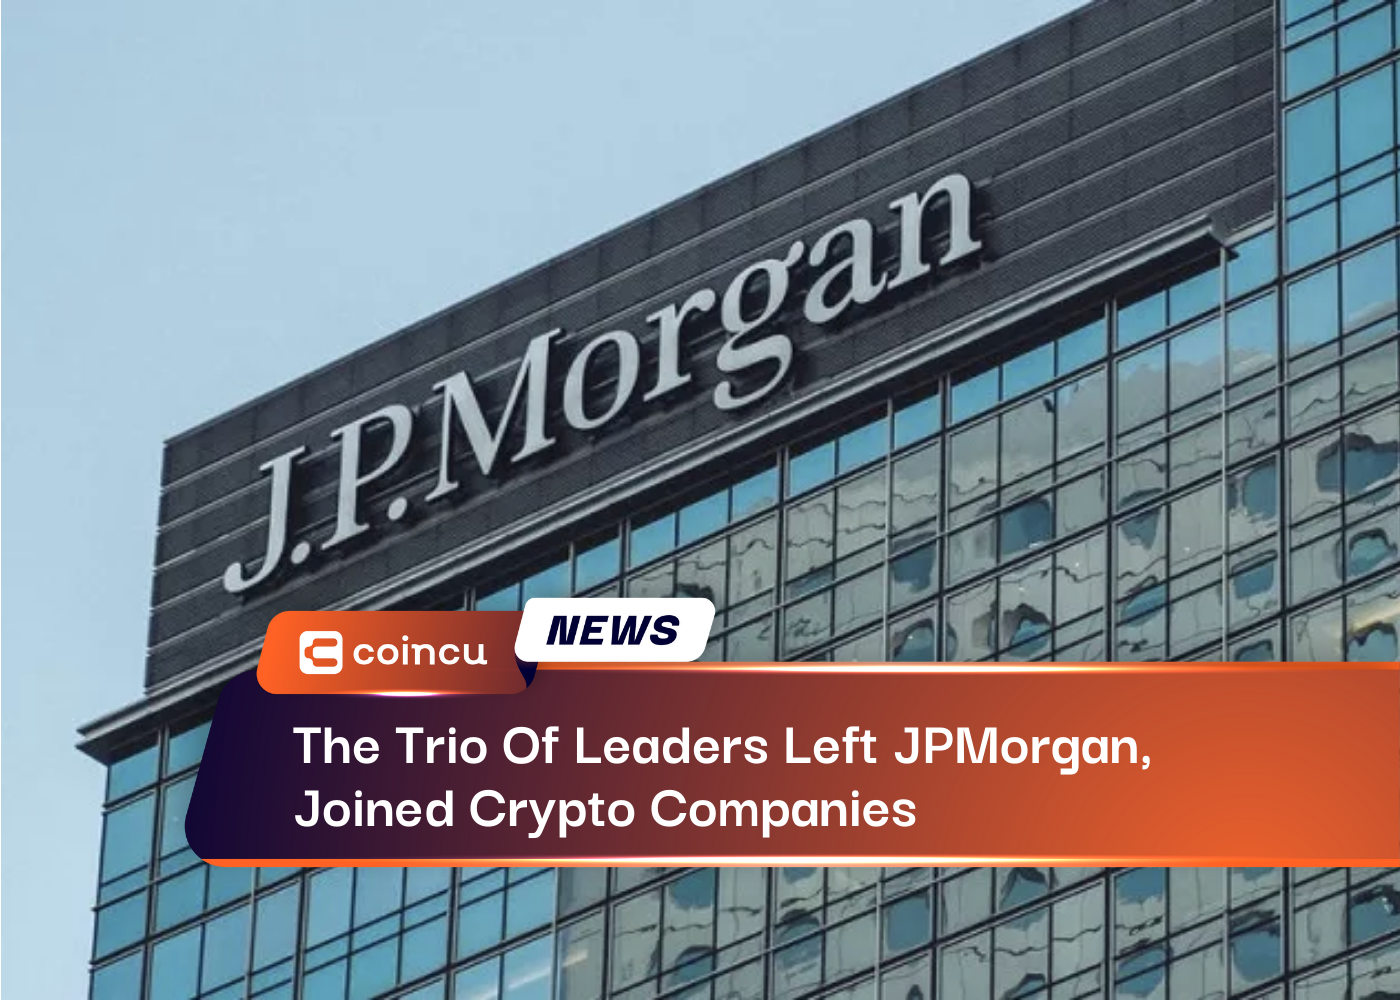 नेताओं की तिकड़ी ने जेपी मॉर्गन छोड़ दिया, क्रिप्टो कंपनियों में शामिल हो गए